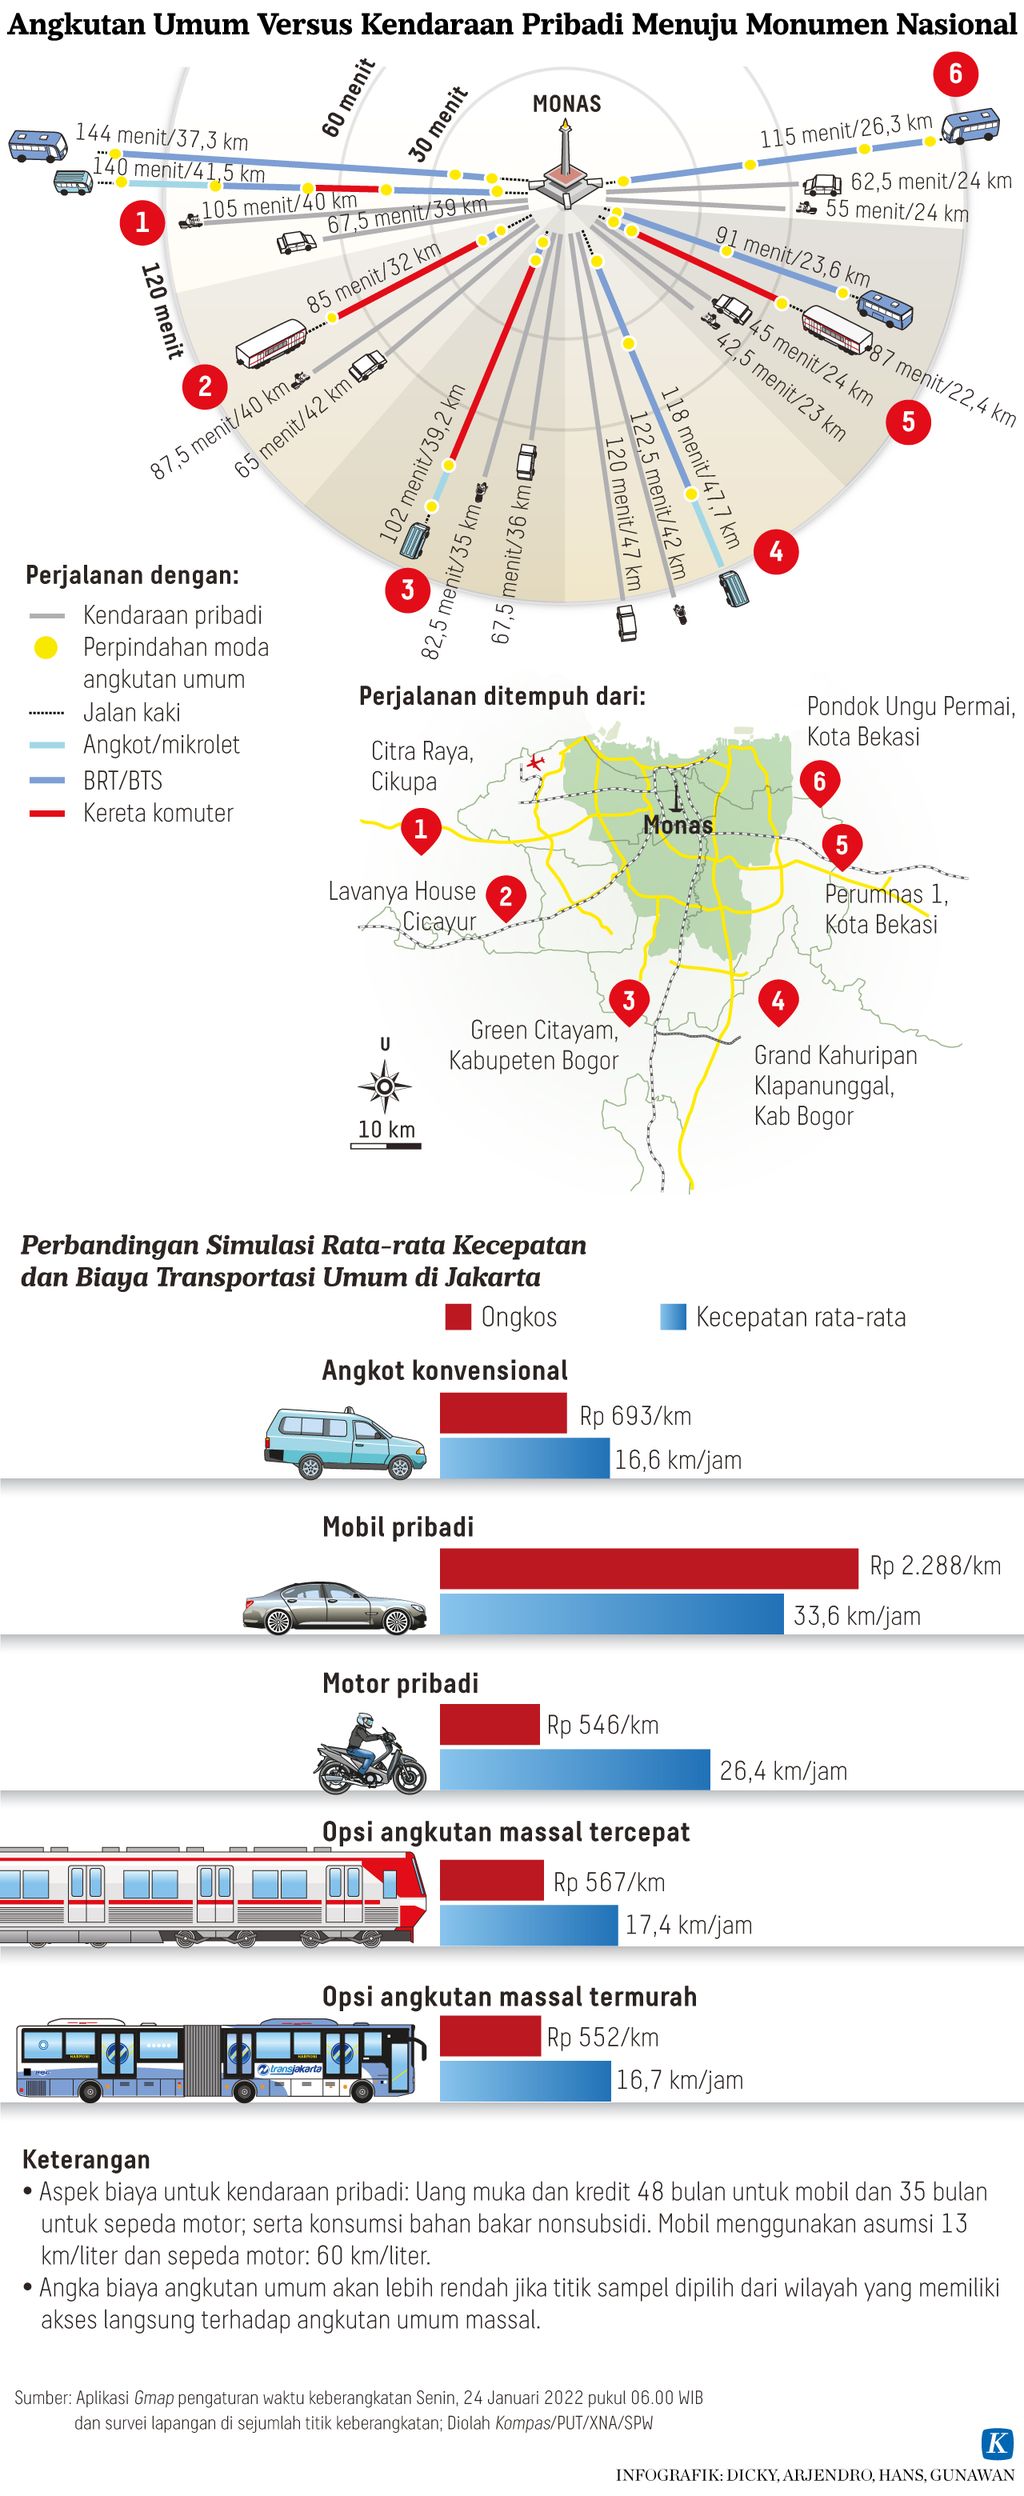 Infografik Lipsus Angkutan Umum Versus Kendaraan Pribadi Menuju Monumen Nasional